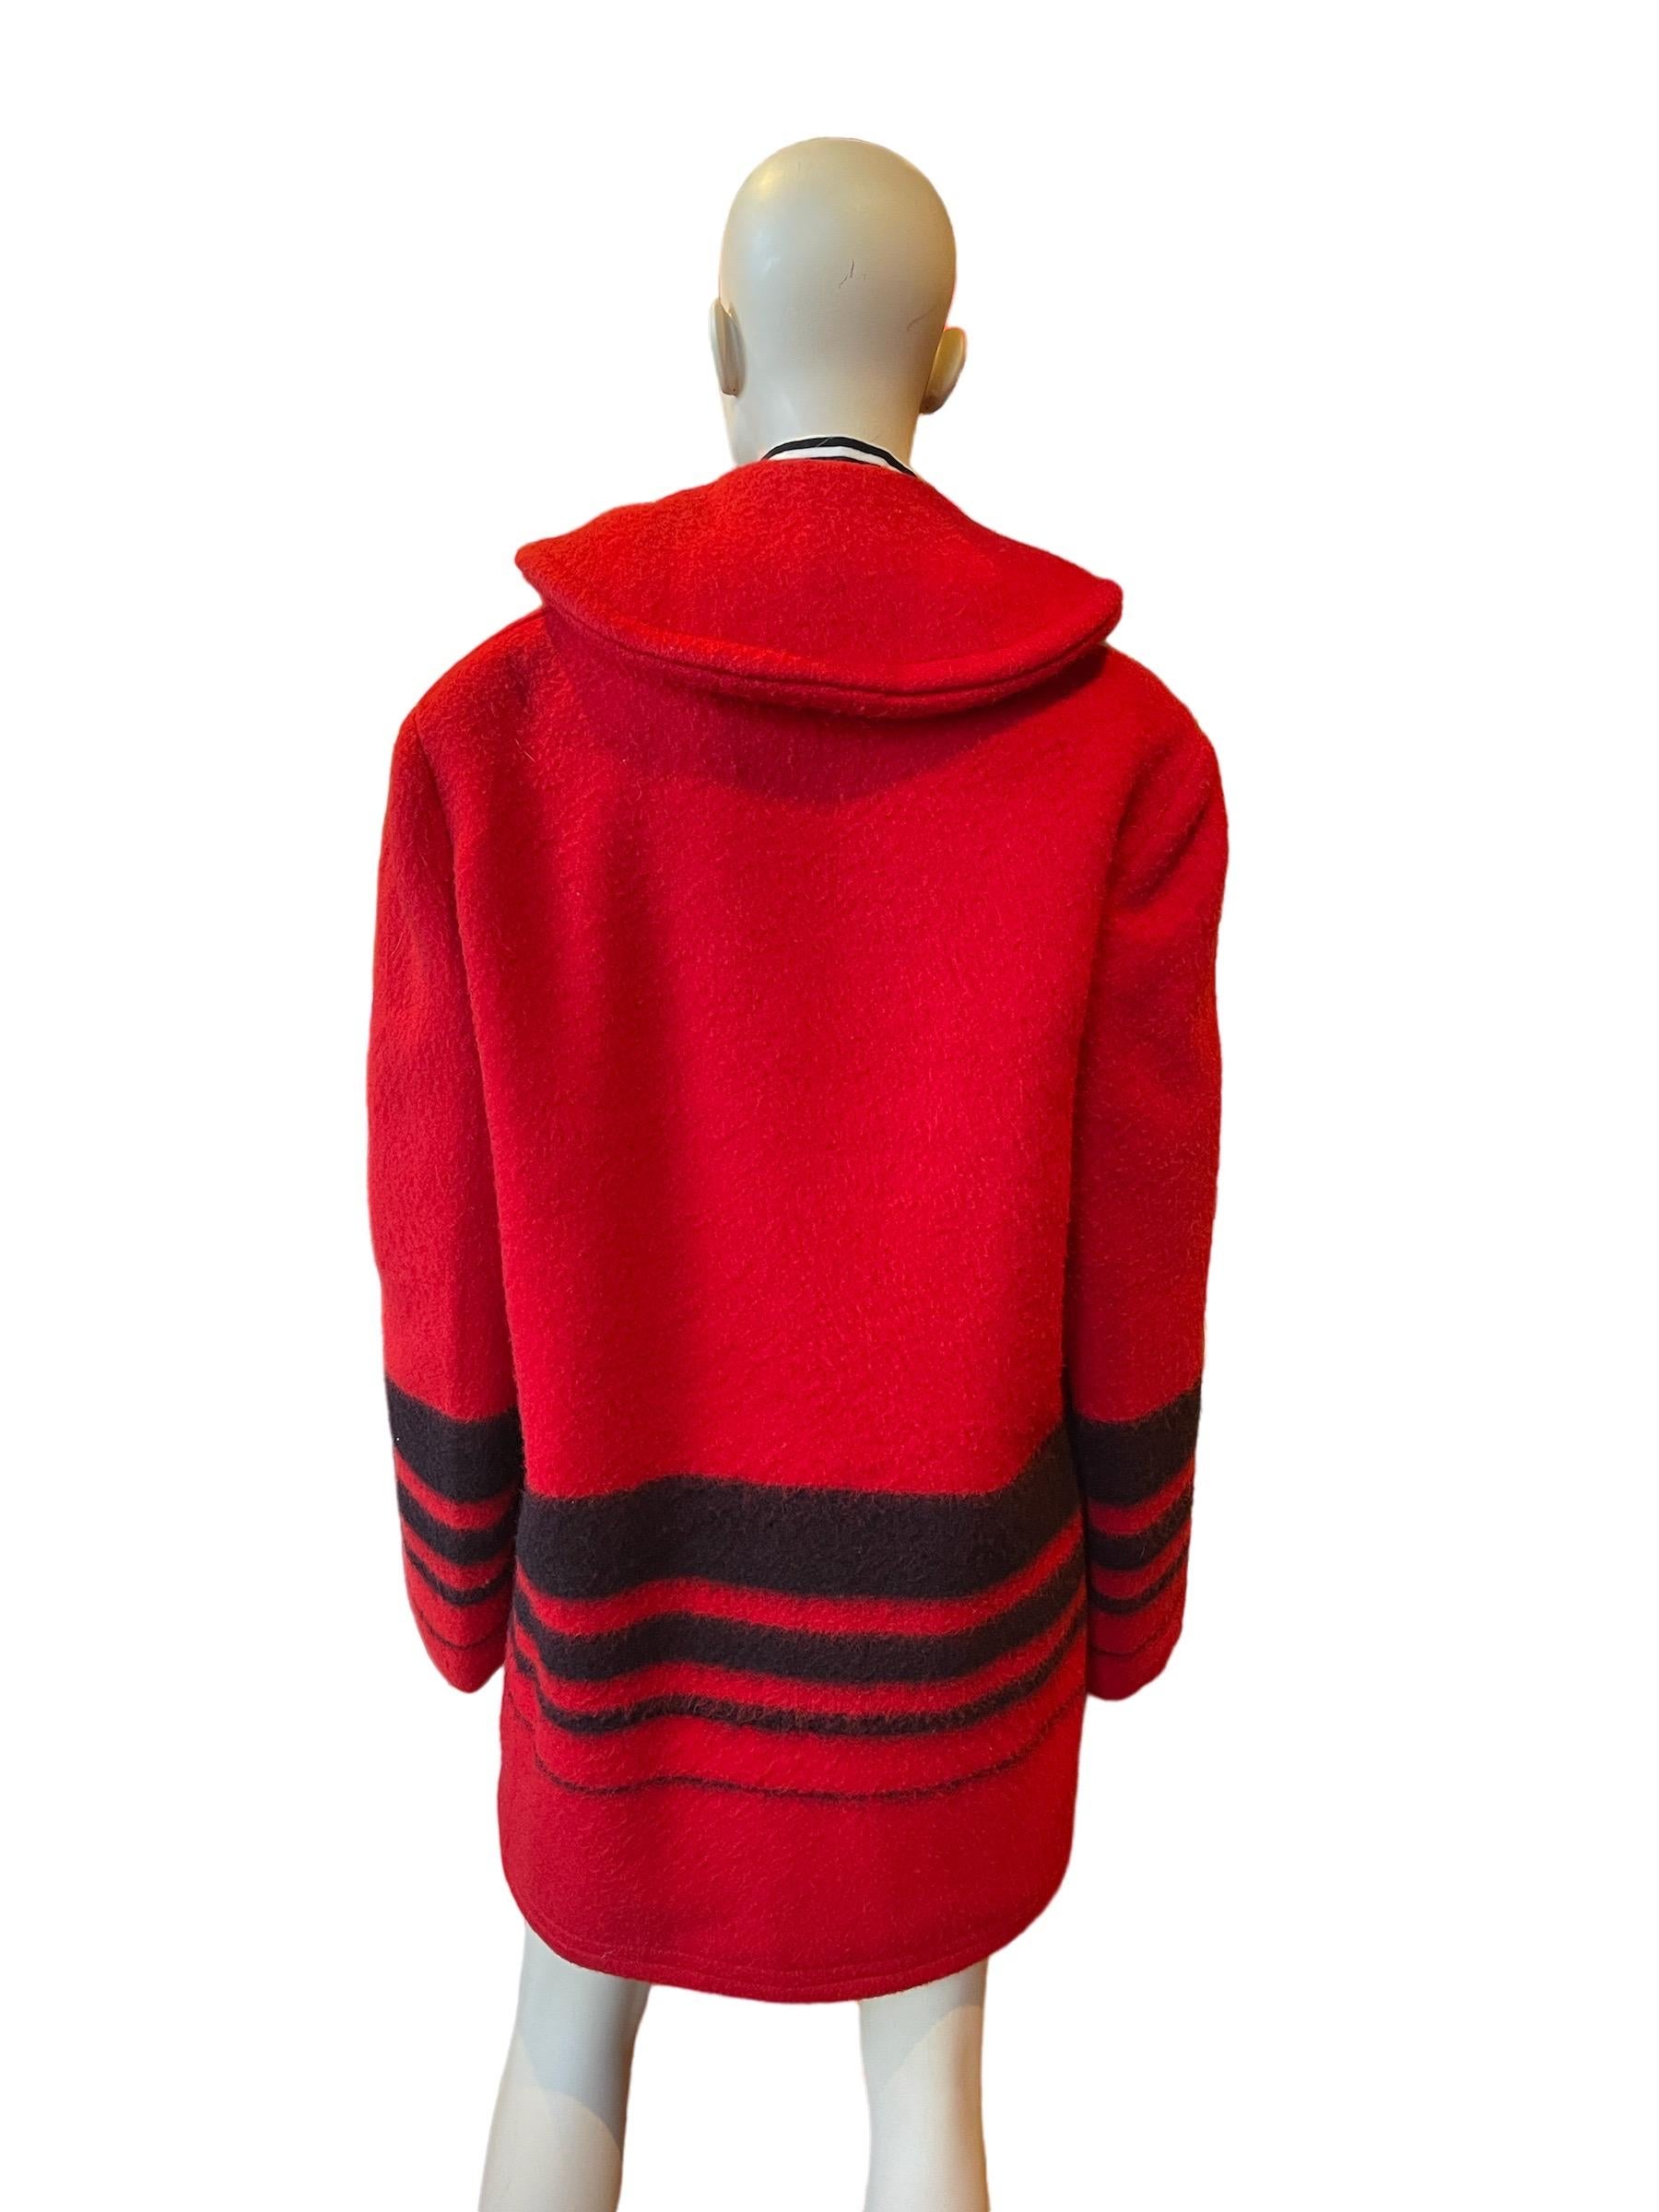 Manteau en laine thermalisée Buck Skein Brand, rouge et noir, des années 1960, doublure Weather Control

Un magnifique manteau de laine thermisée rouge et noir. Petits trous sur la capuche et le coude. 
